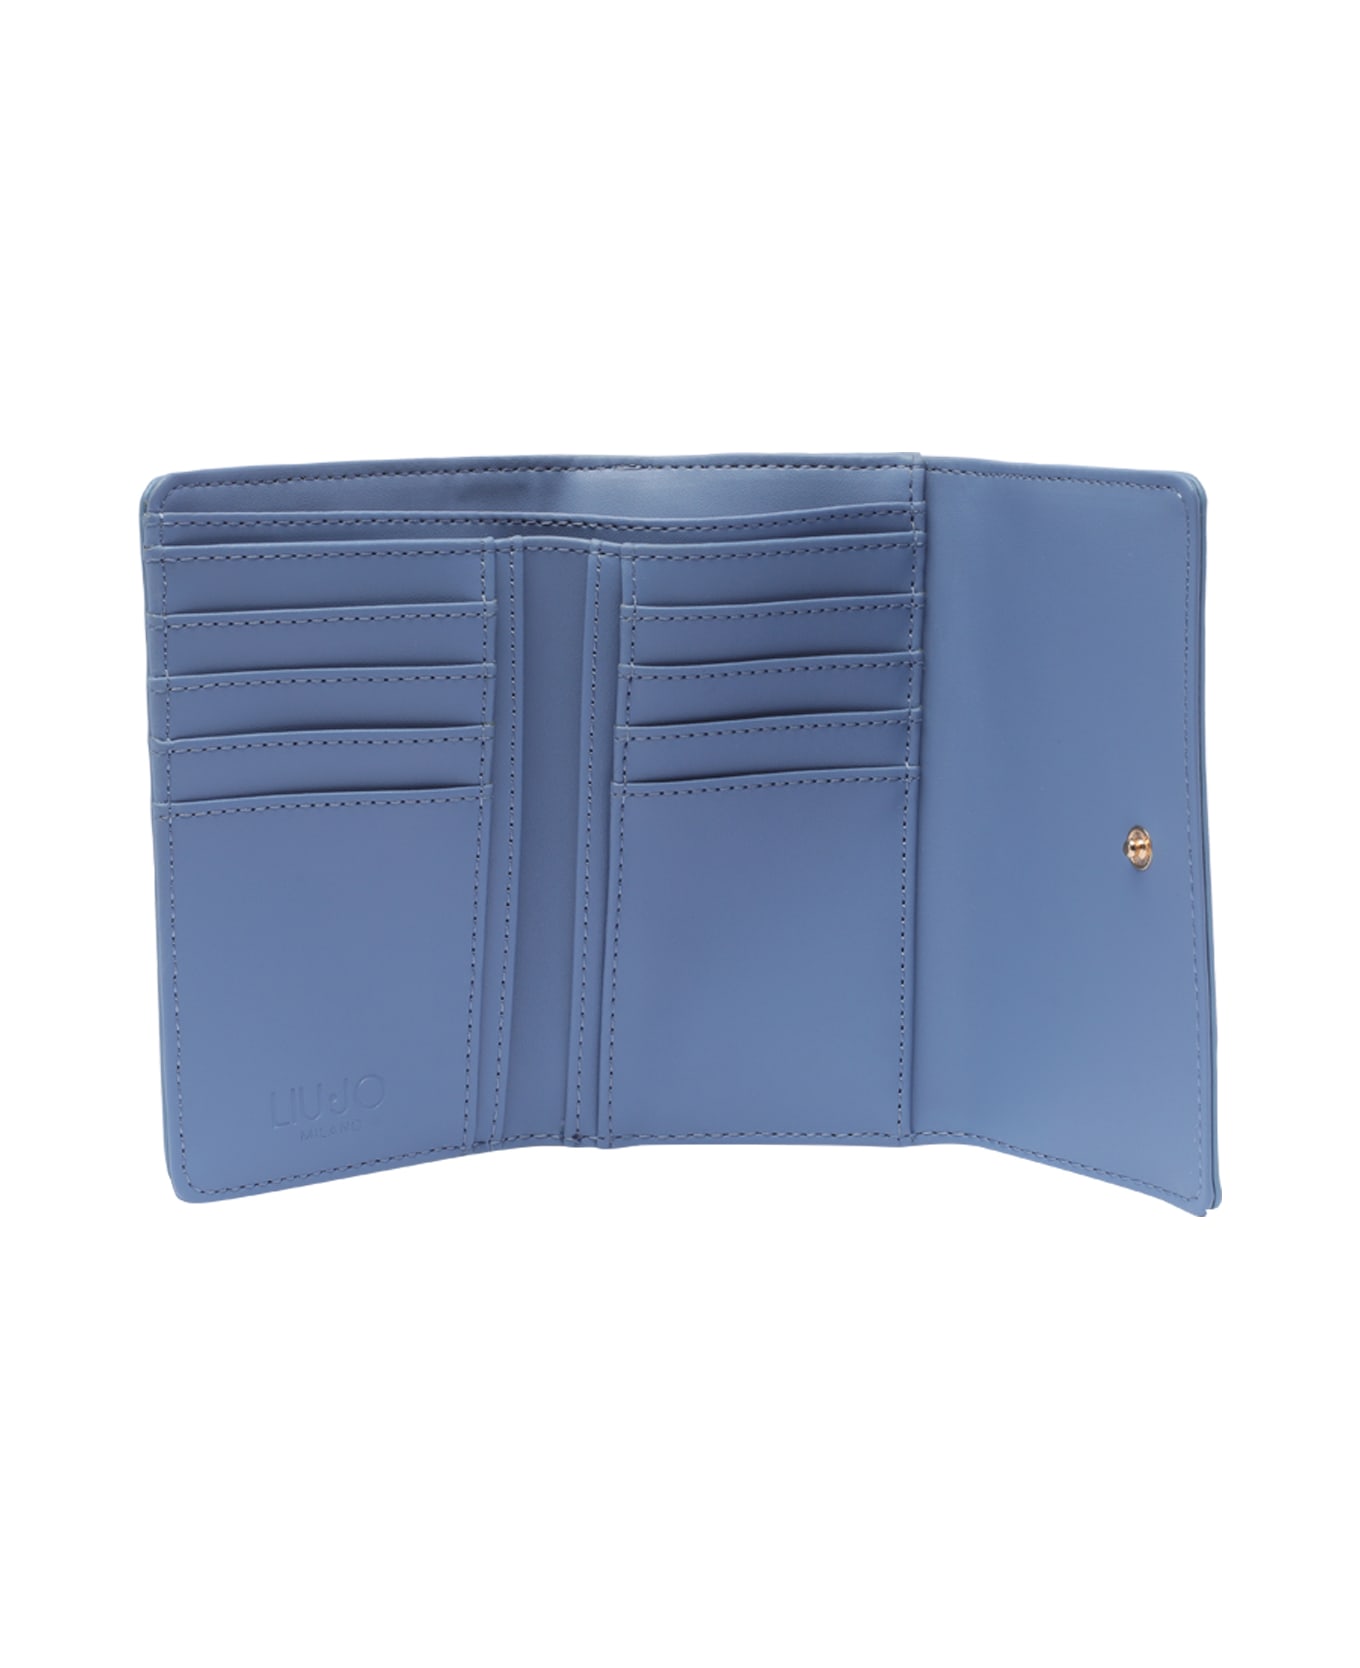 Liu-Jo Medium Logo Wallet - Blue